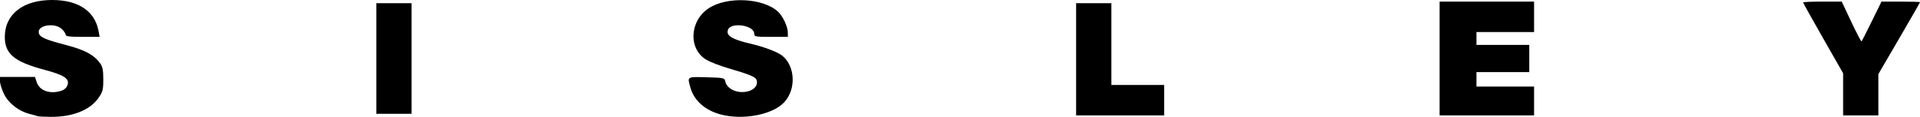 SISLEY logo de folhetos